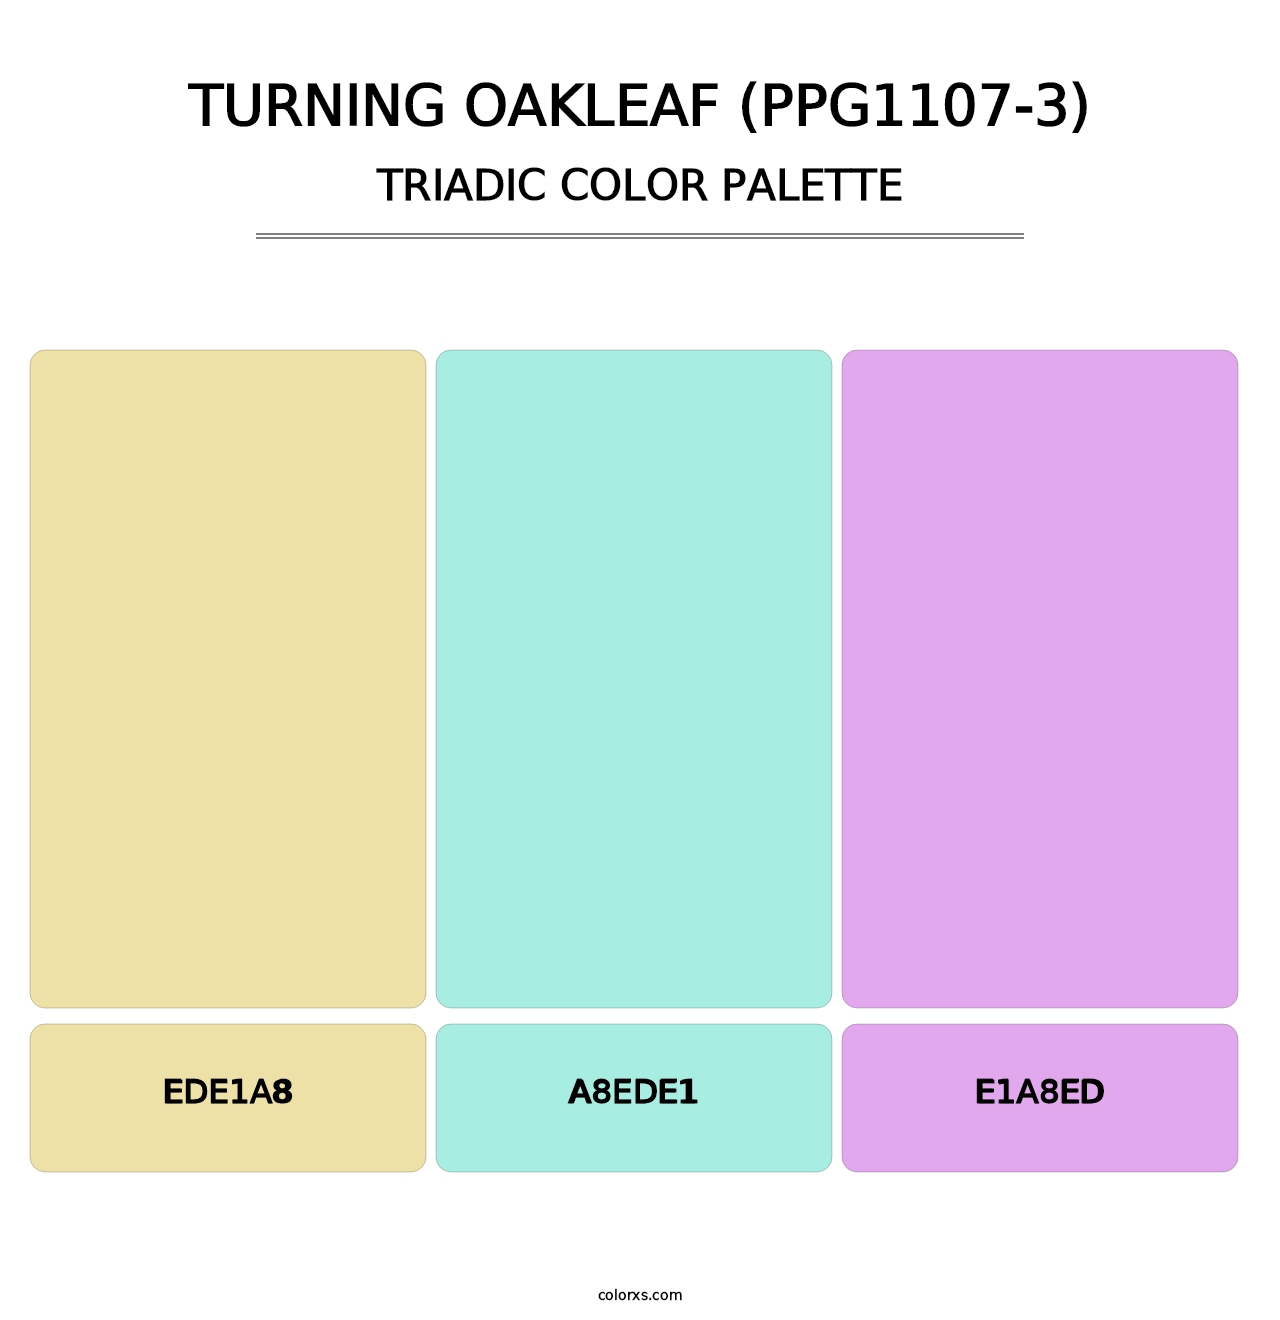 Turning Oakleaf (PPG1107-3) - Triadic Color Palette